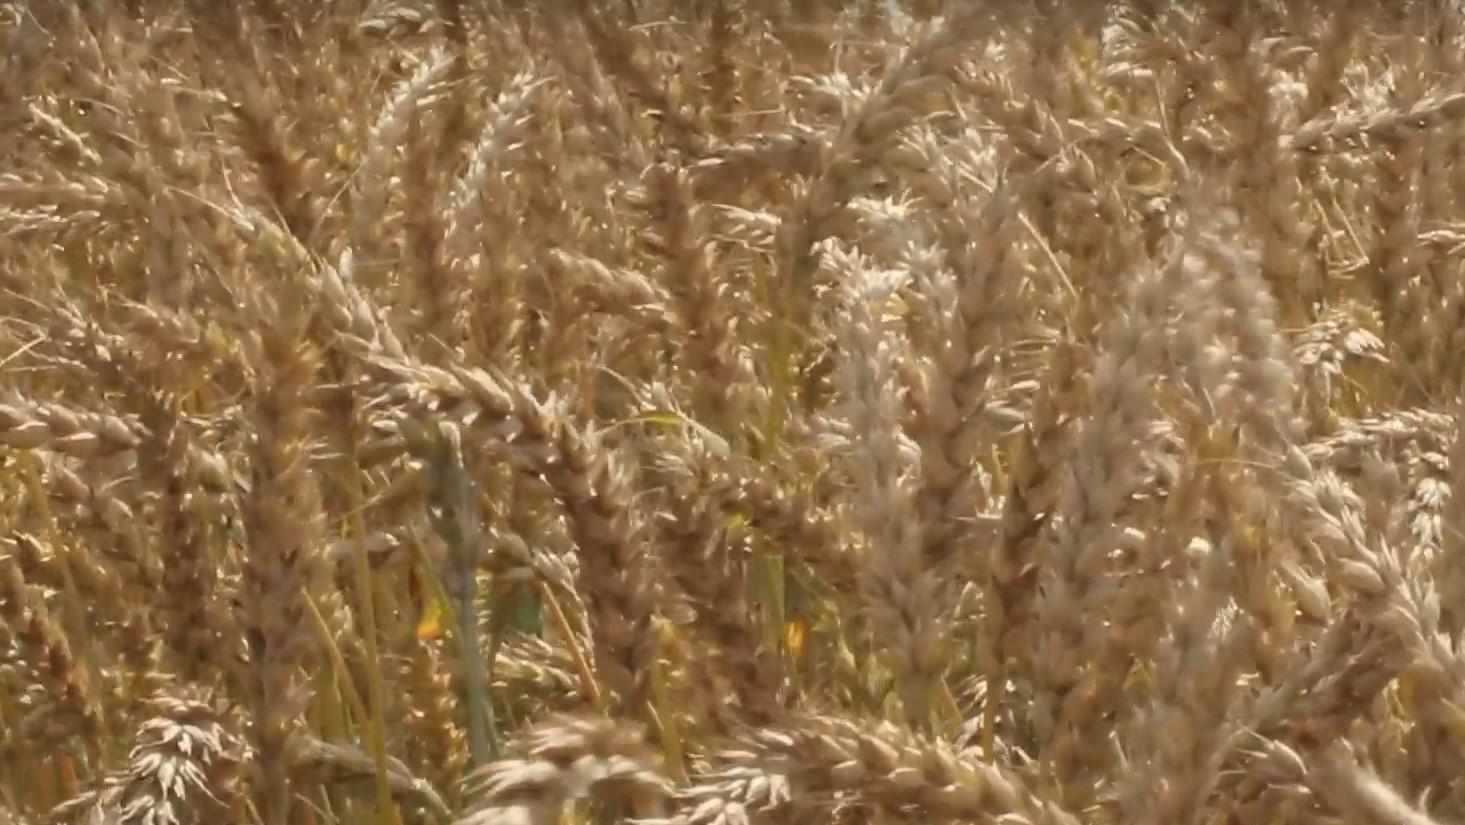 266,5 тыс. тонн зерна и продуктов его переработки экспортировала Орловская область
